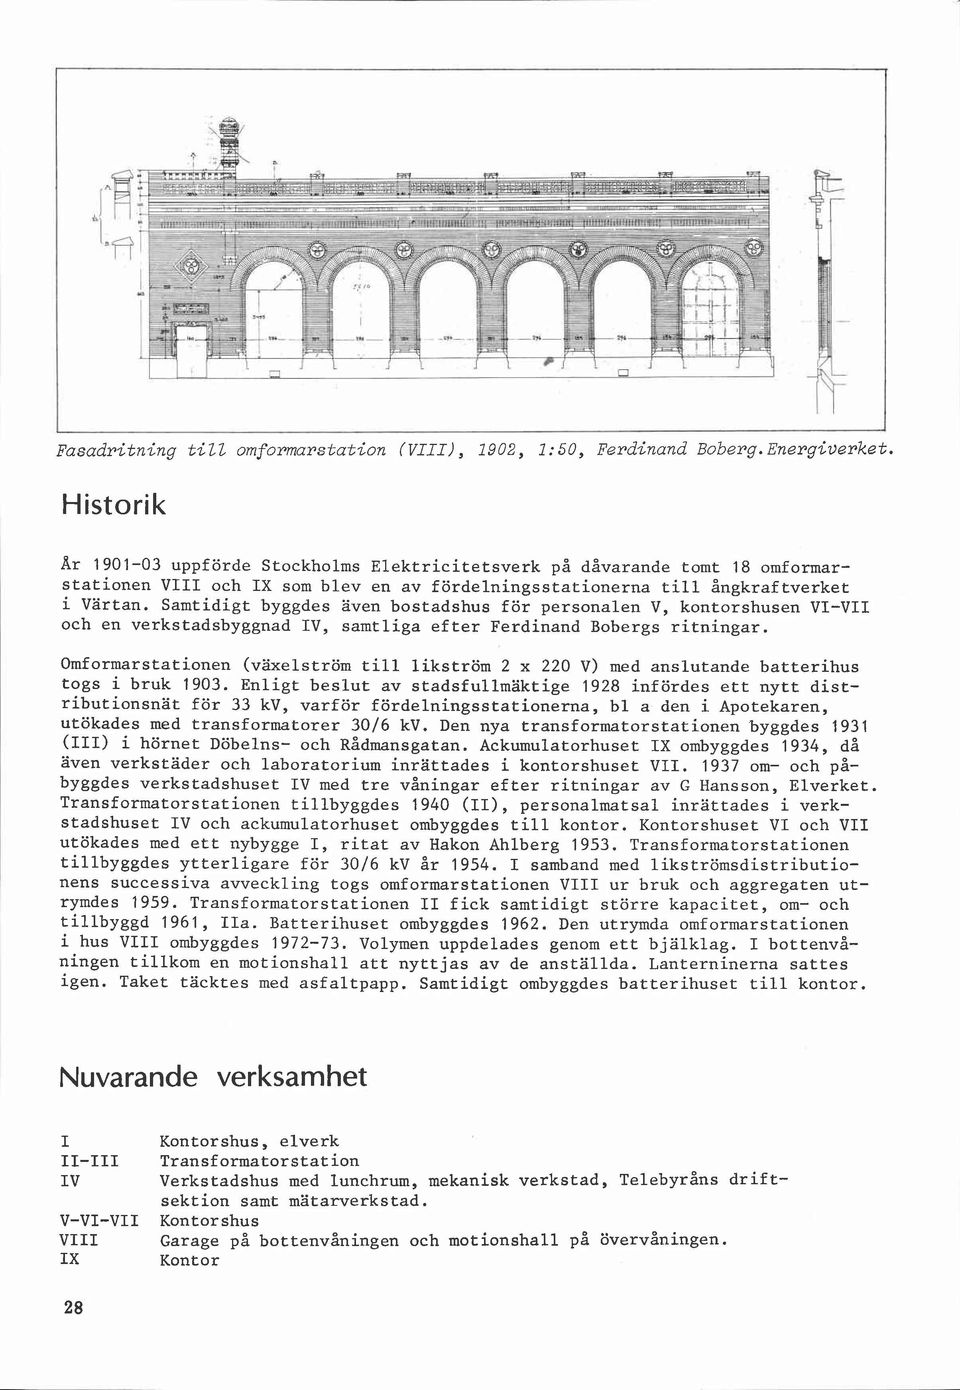 Samtidigt byggdes även bostadshus för personalen V, kontorshusen VI-VII och en verkstadsbyggnad IV, samtliga efter Ferdinand Bobergs ritningar.